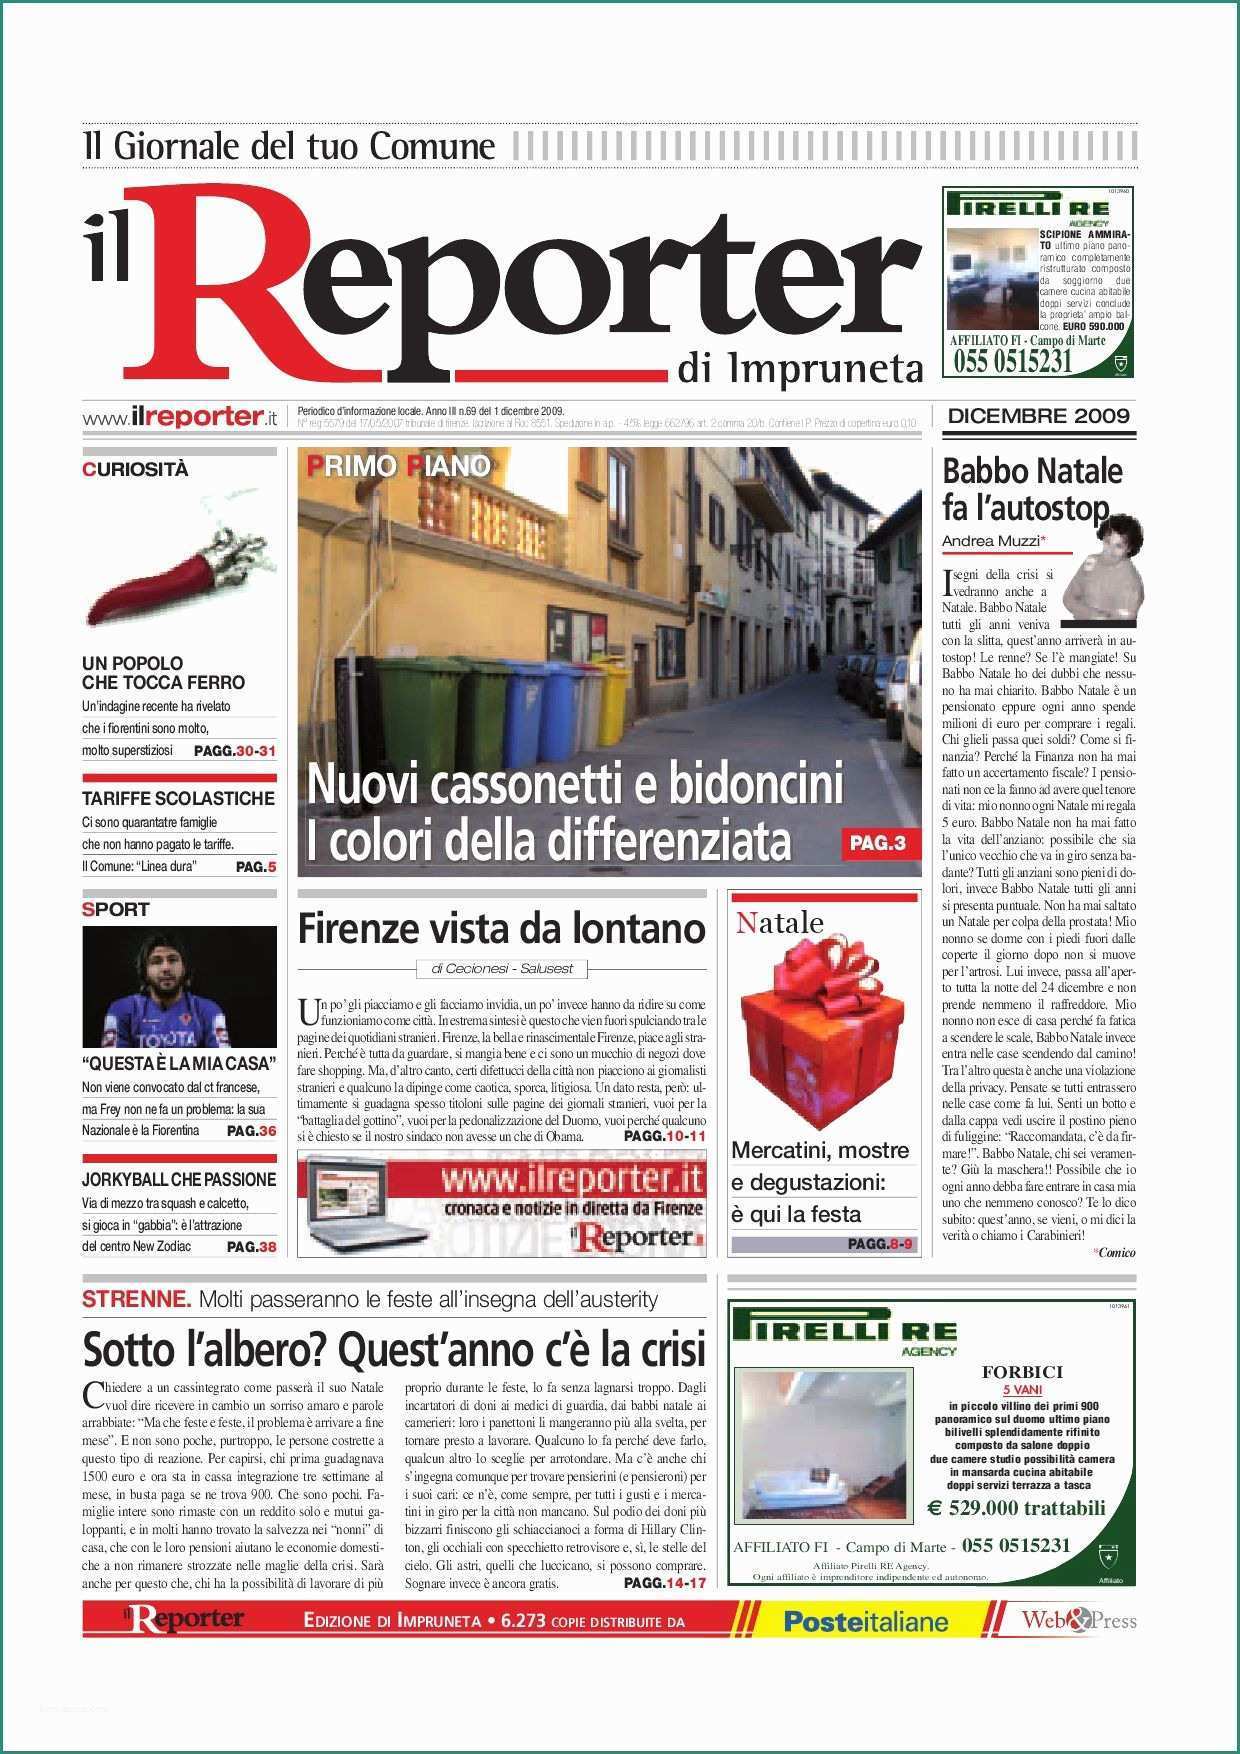 Bordi Uncinetto Per Copertine Neonato E Il Reporter Impruneta Dicembre 2009 by Ilreporter issuu